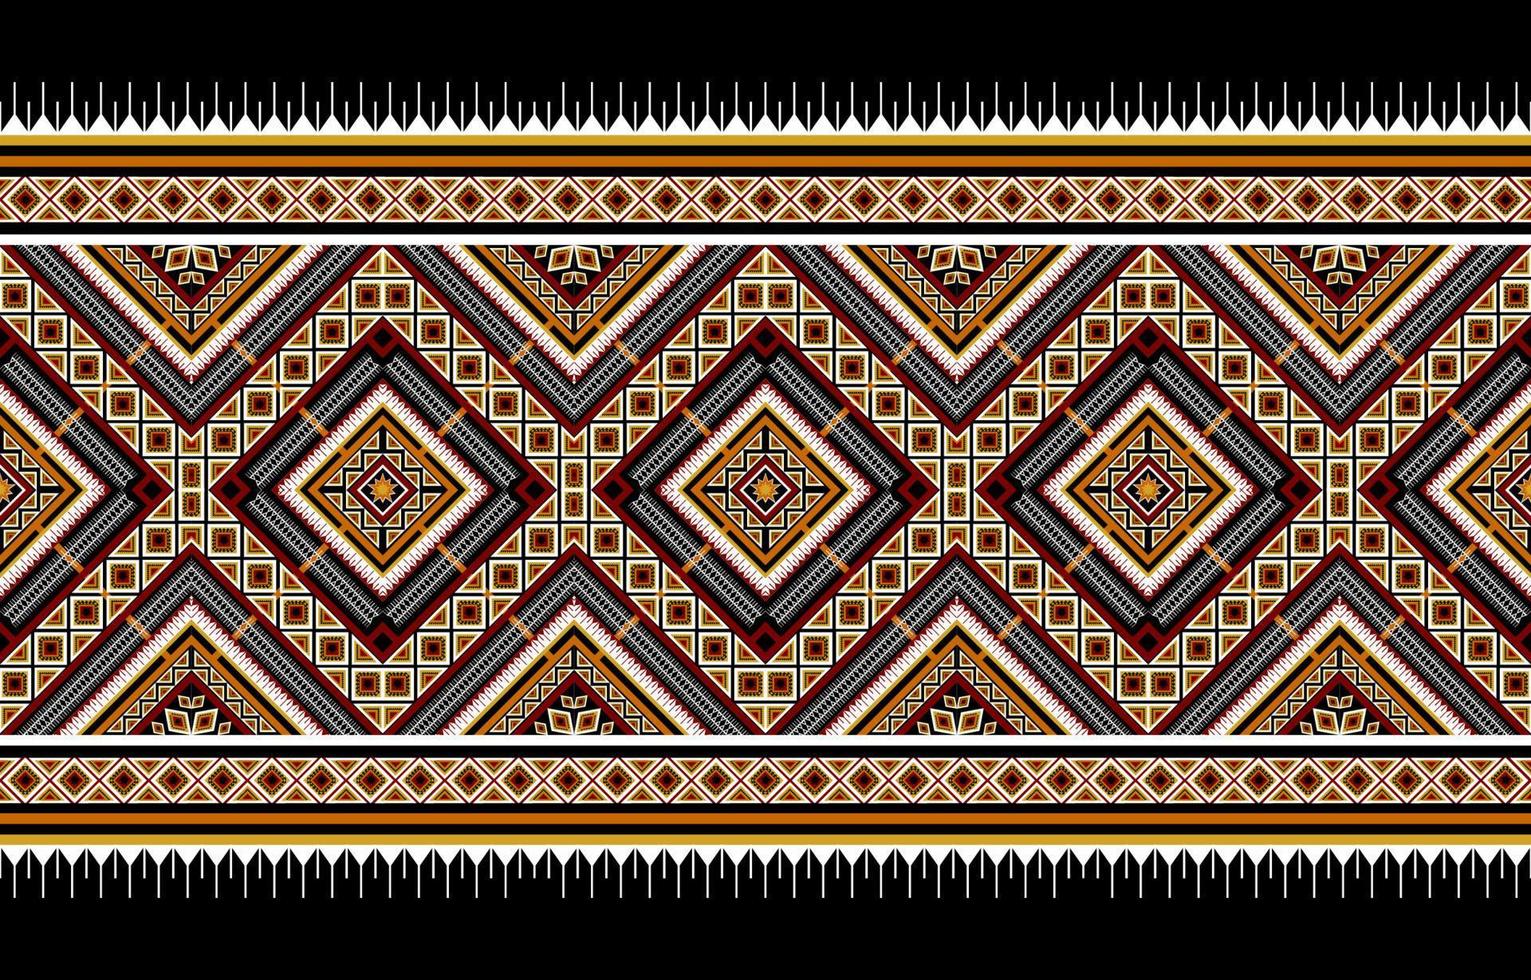 abstrakt geometriska etniska mönster traditionella. amerikansk, mexikansk stil. design för bakgrund, illustration, tapeter, tyg, batik, matta, kläder, broderi vektor